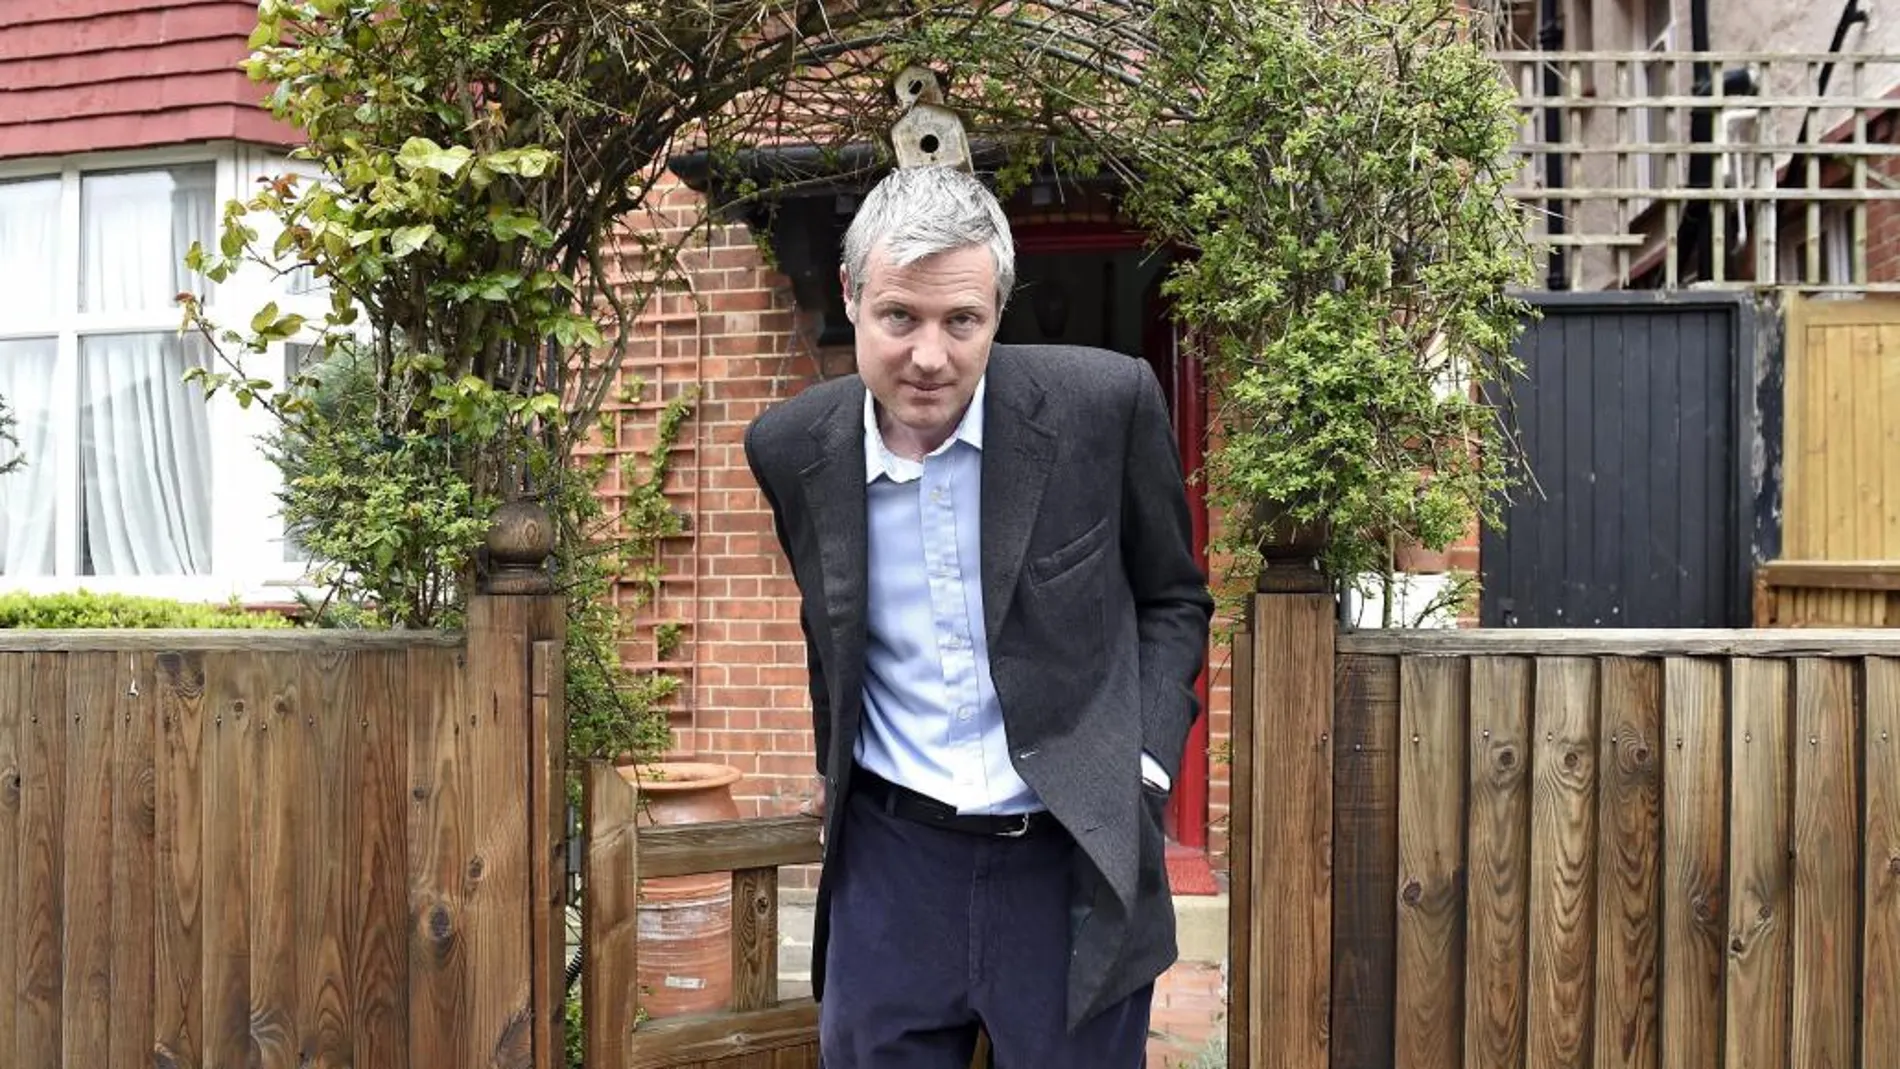 El candidato conservador a la alcaldía de Londres, Zac Goldsmith, participa en un acto electoral en Londres, Reino Unido